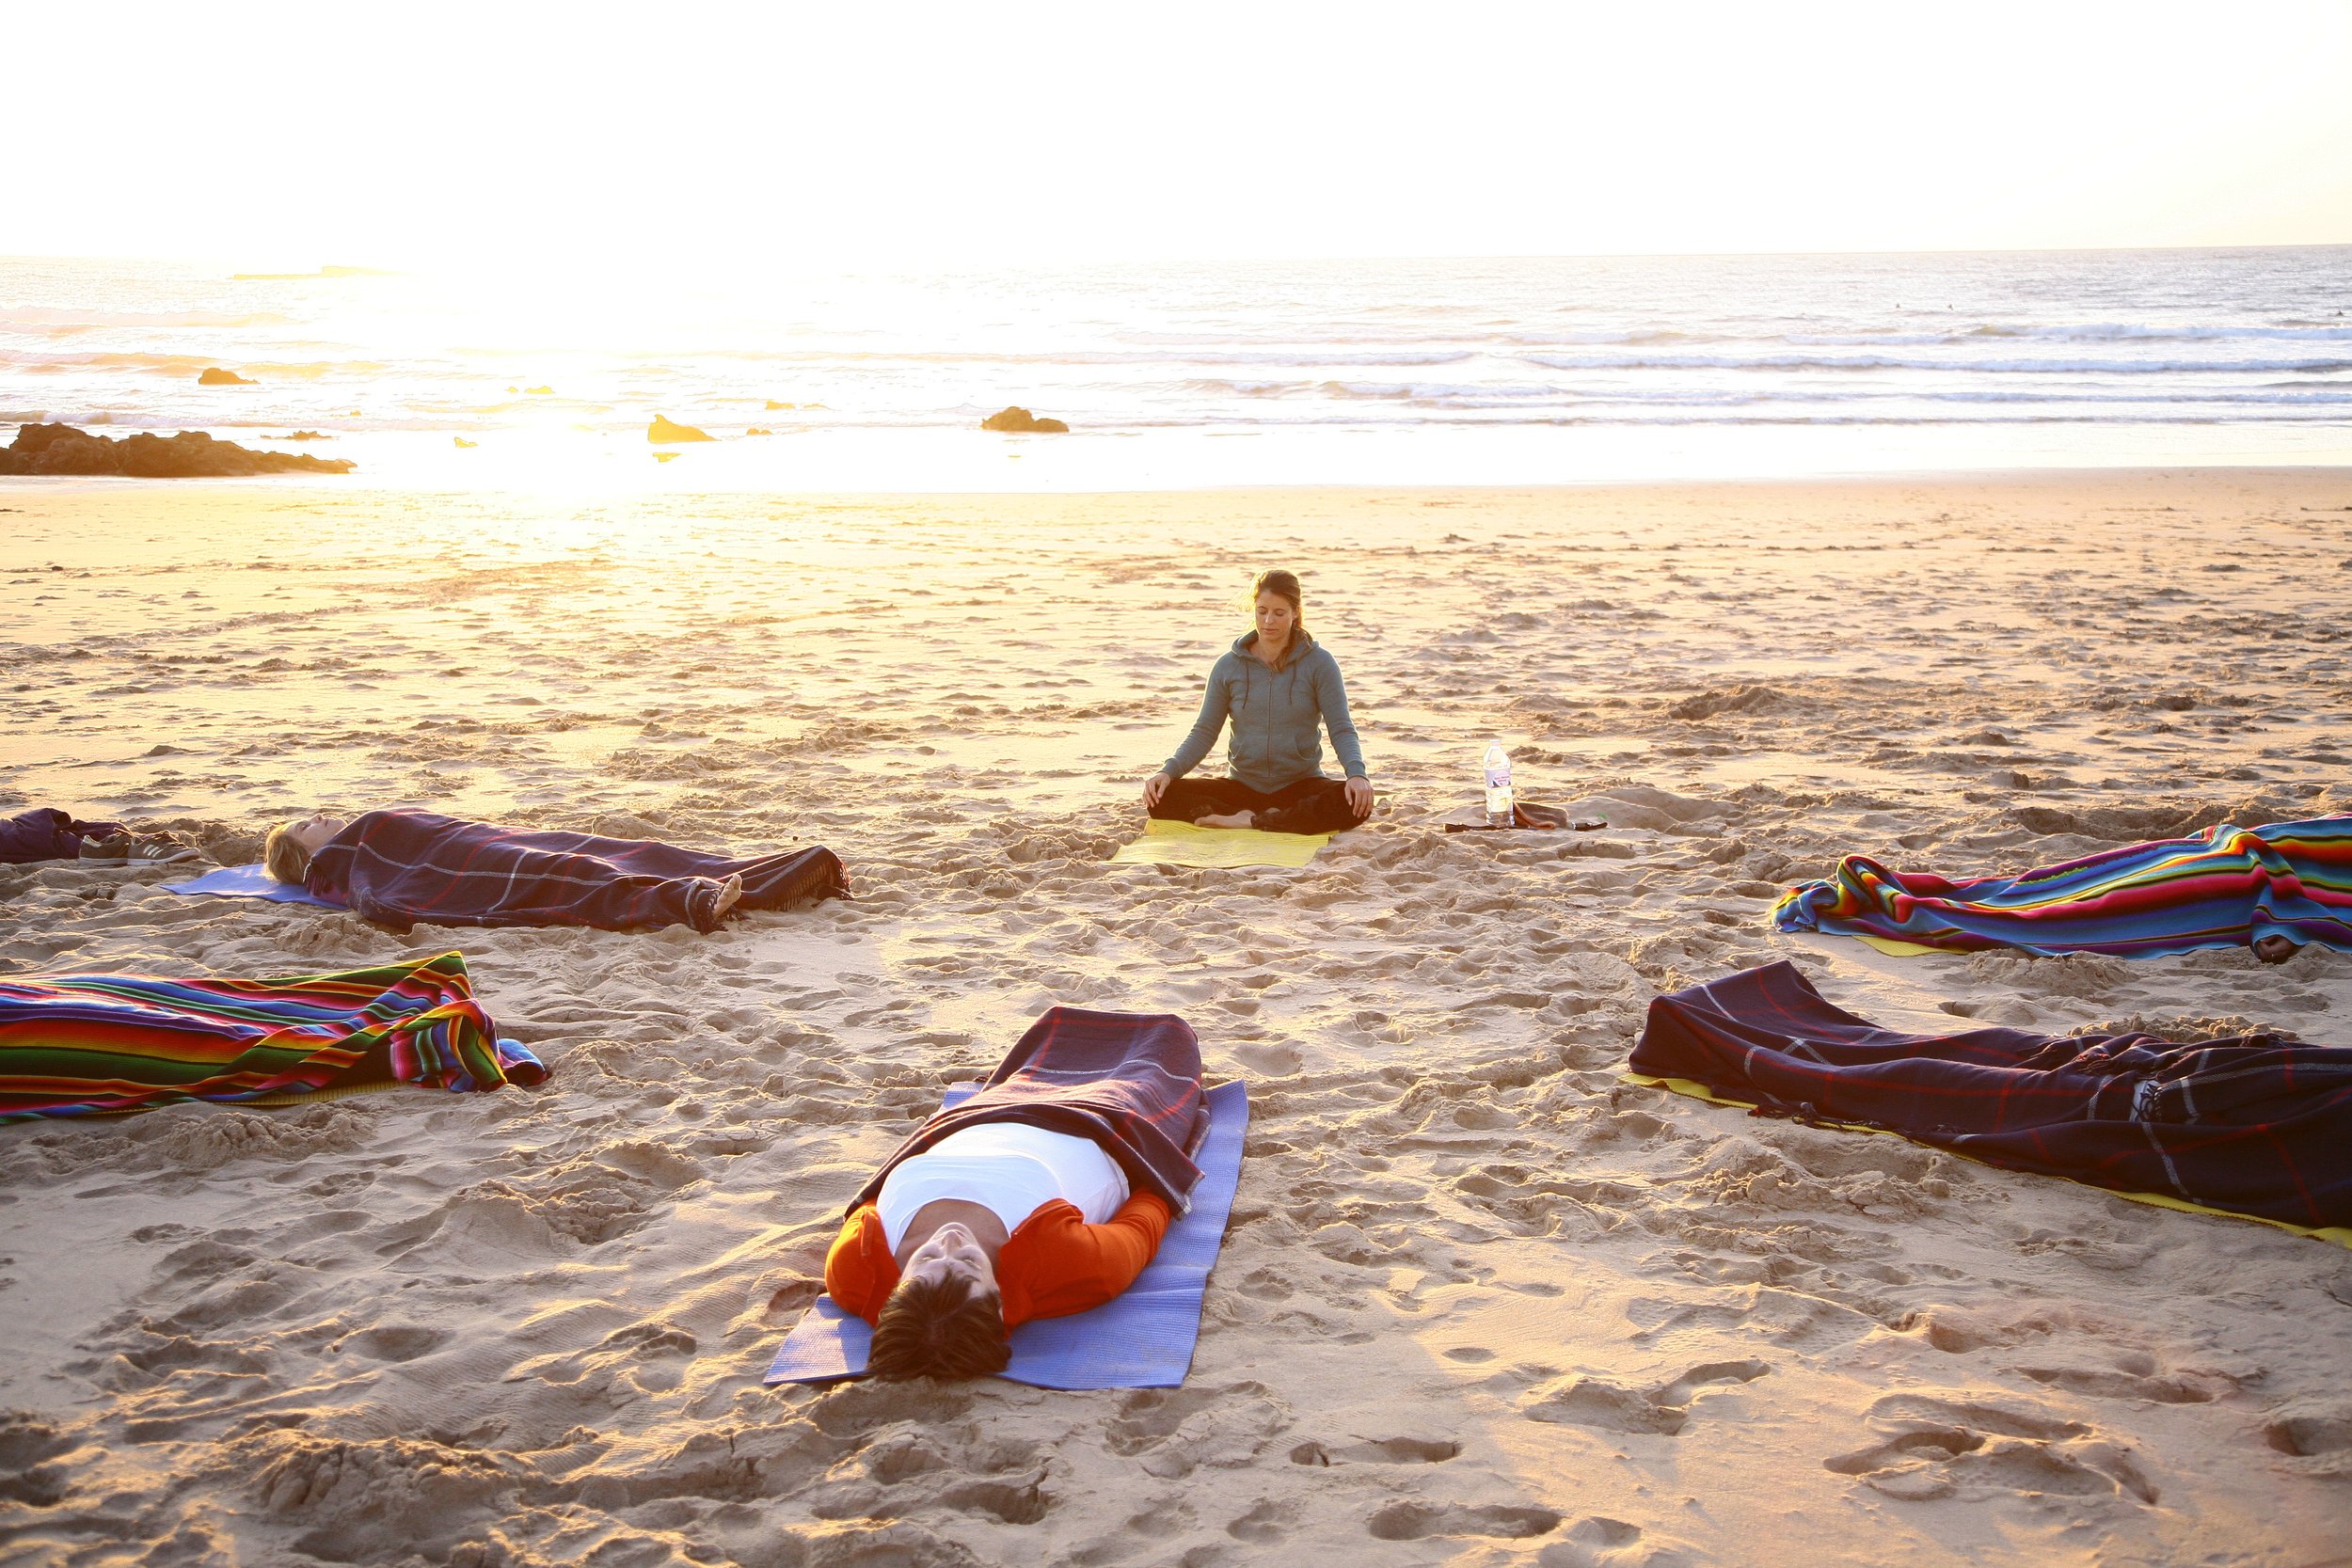  Llocs per visitar a Portugal per a unes vacances actives, des del ioga fins al surf